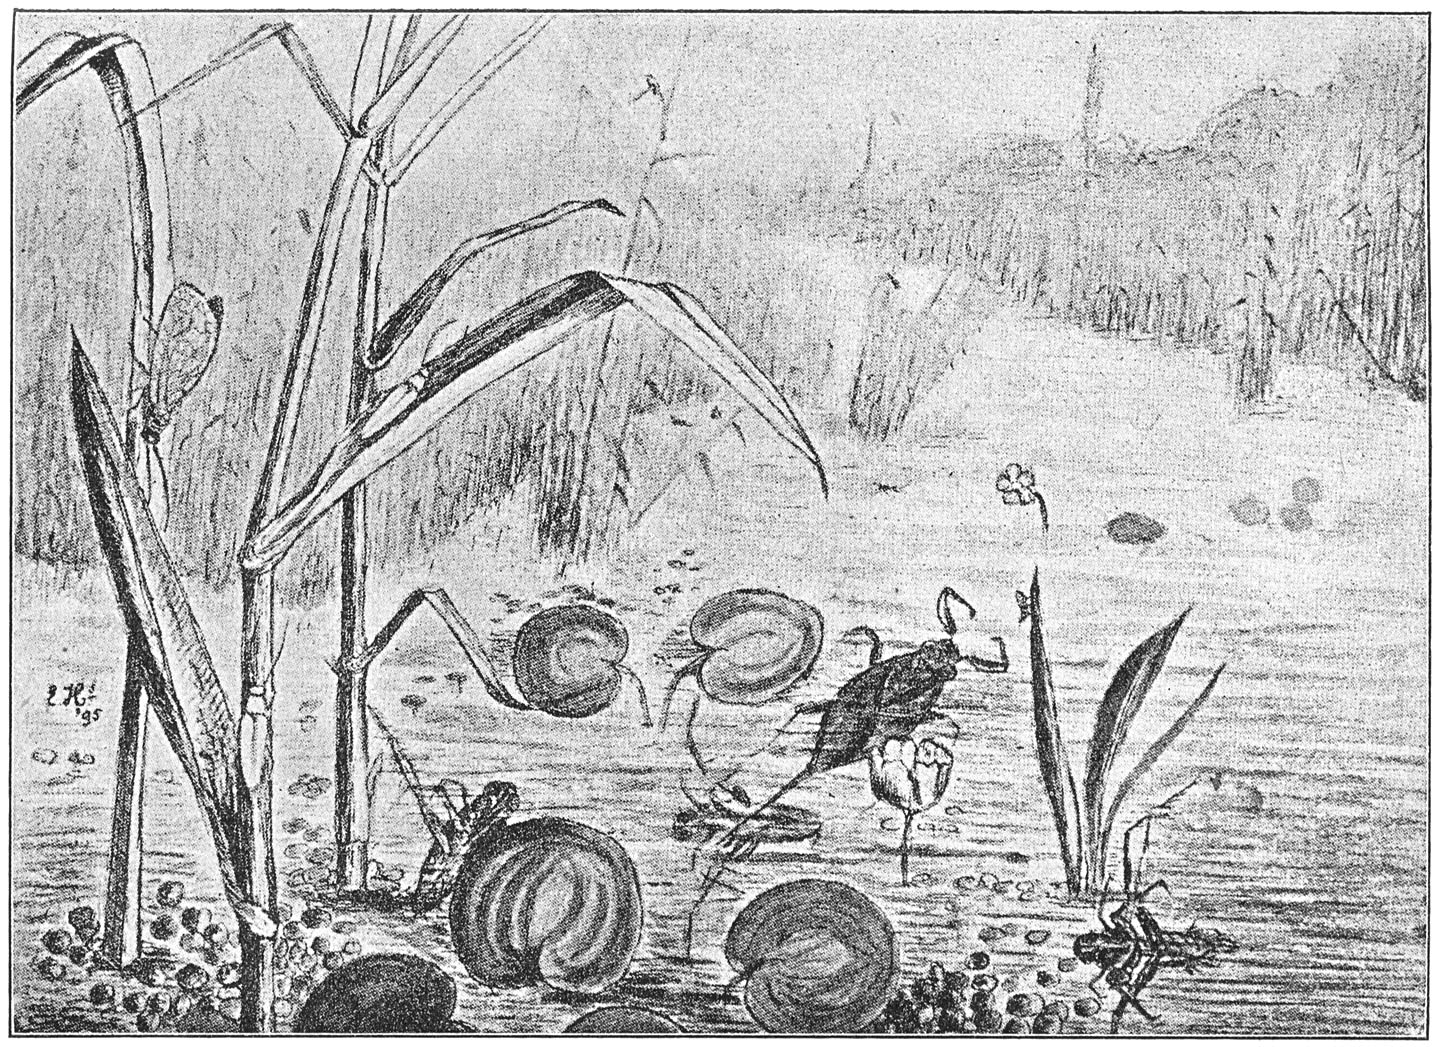 Rechts, op ’t riet: twee donacia’s en een gaasvlieg. In ’t midden: een waterscorpioen; en op den voorgrond, half zichtbaar: een paar ruggezwemmers.